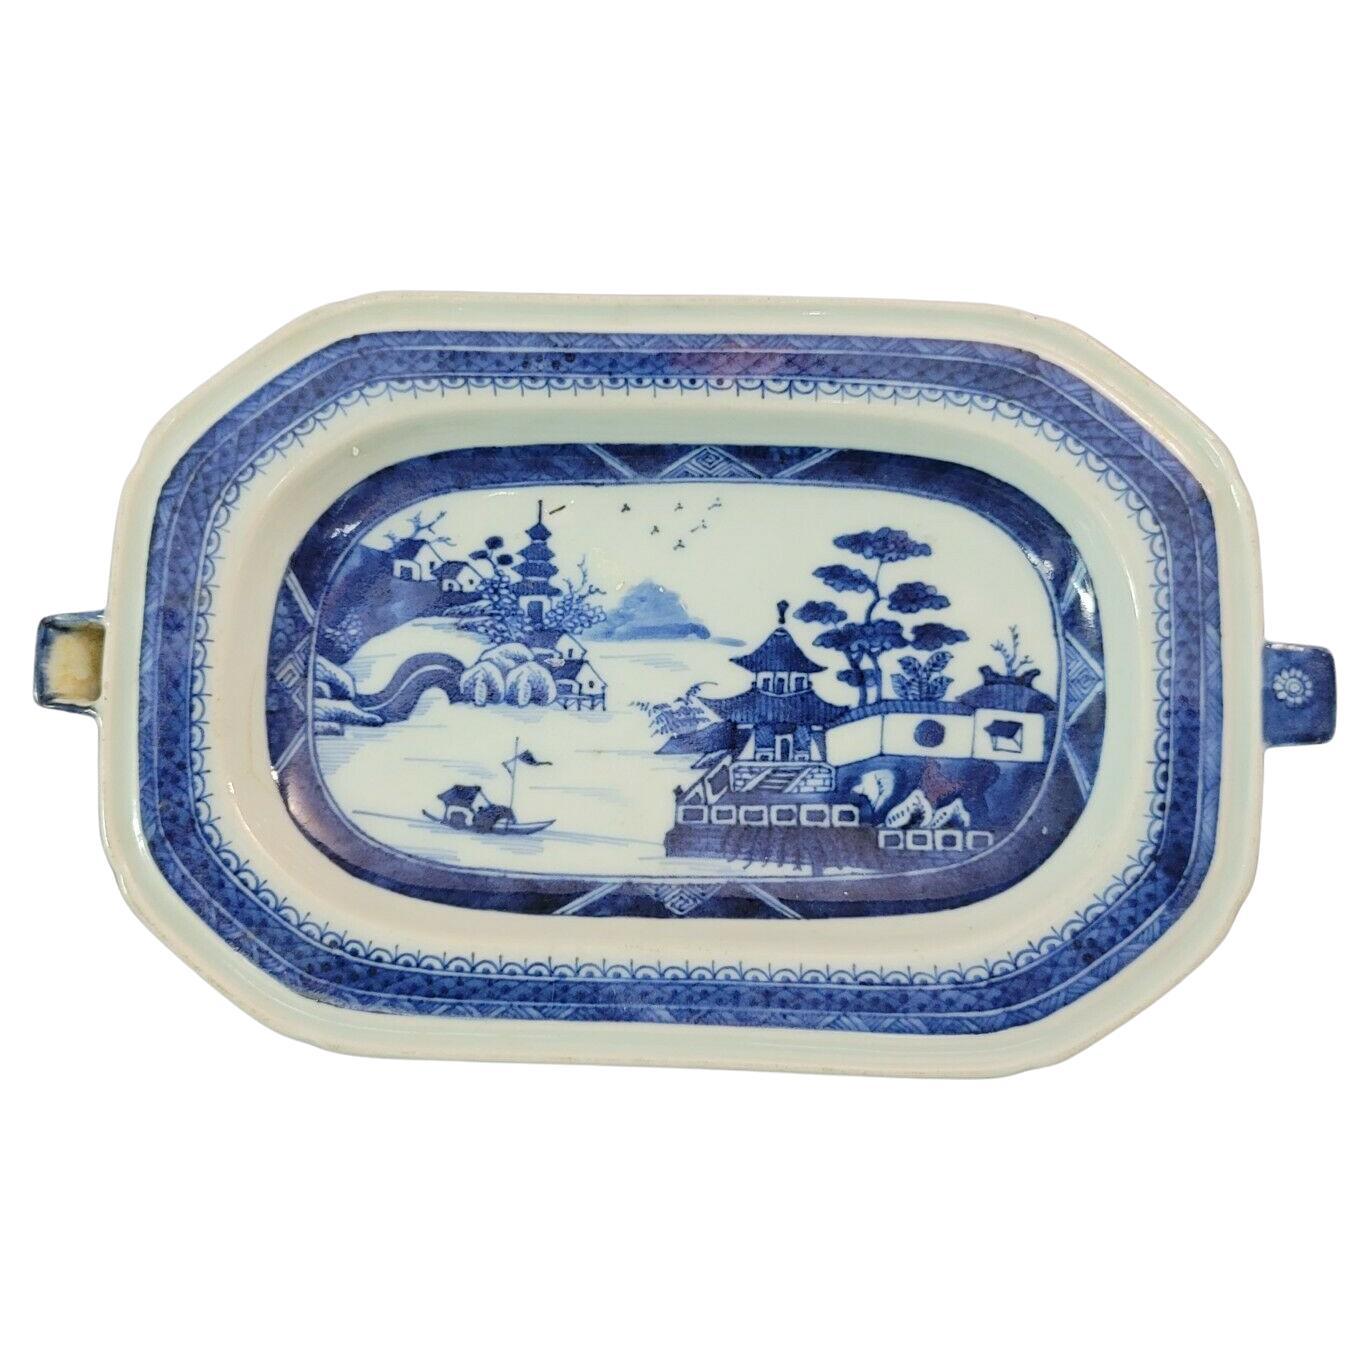 Chinesischer Kanton- Warming-Teller aus blauem und weißem Porzellan B-007